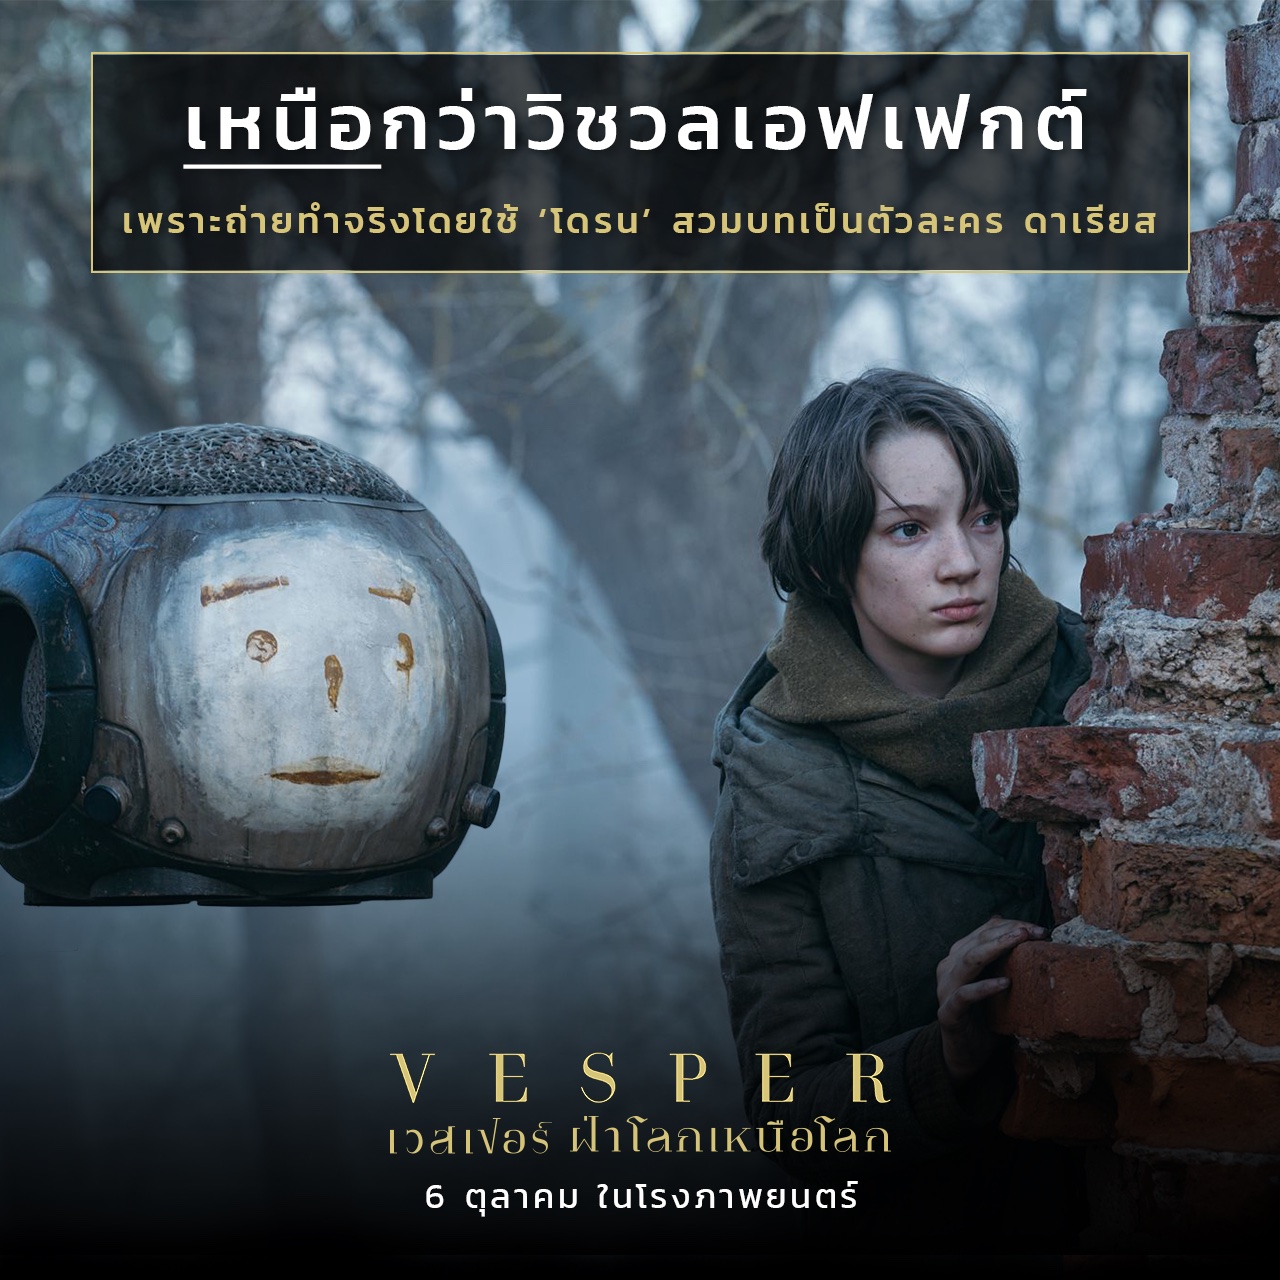 Vesper เวสเปอร์ ฝ่าโลกเหนือโลก